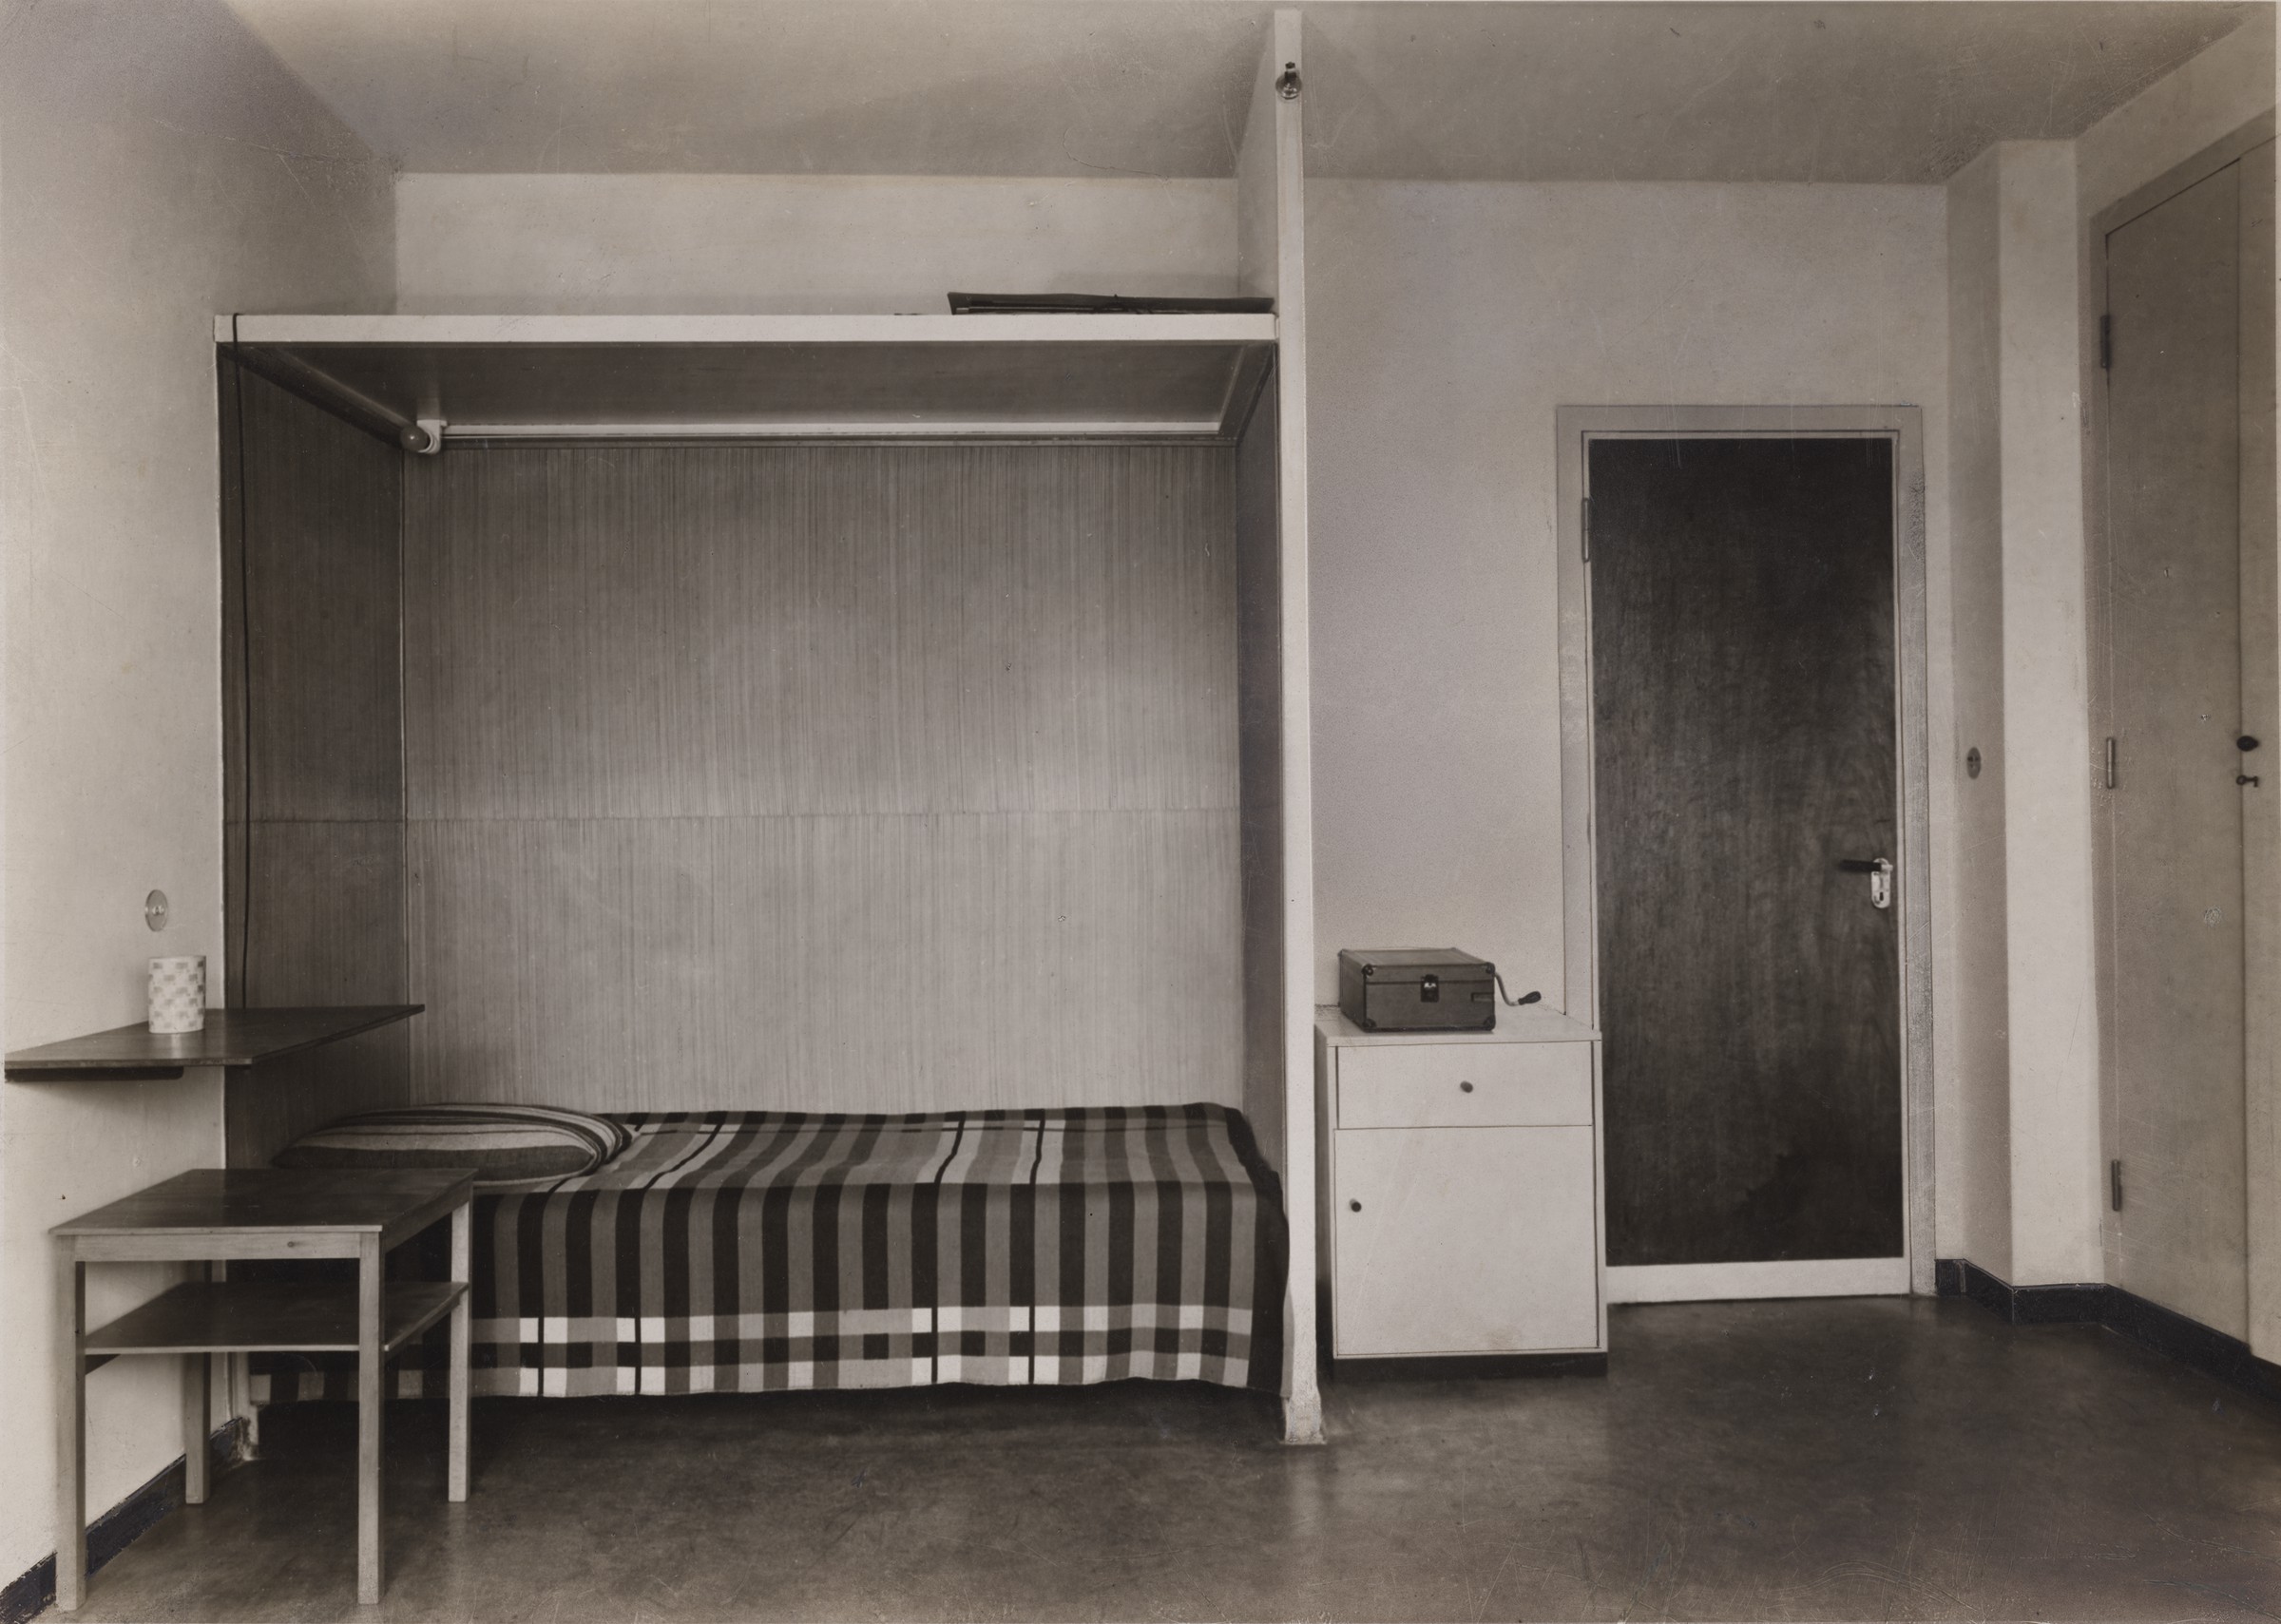 Bauhaus building, student apartment (Harvard Art Museums)